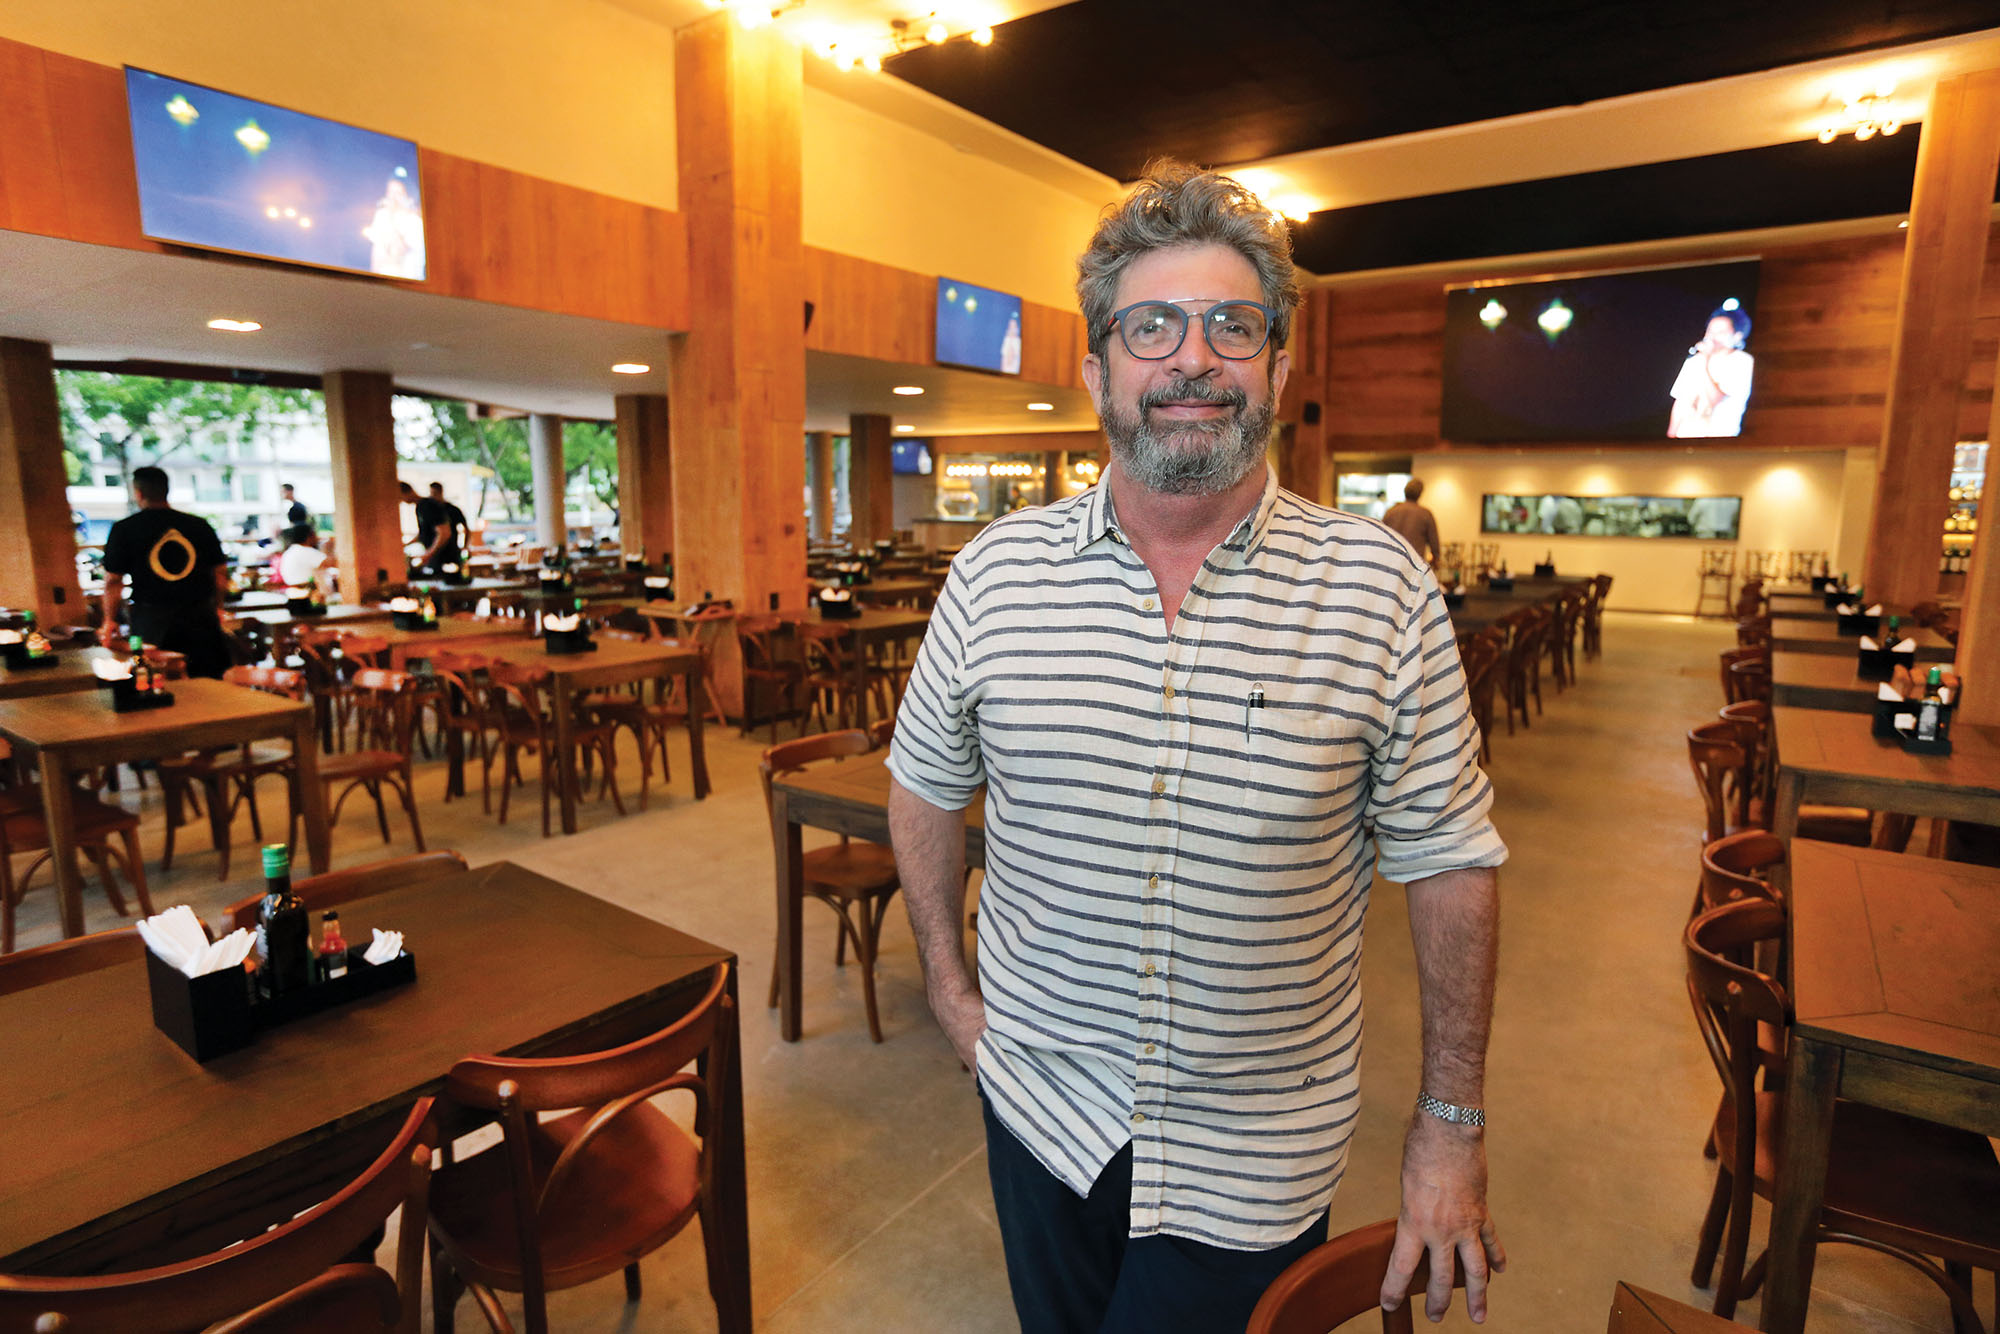 Ô Bar Restaurante inaugura em Ponta Negra